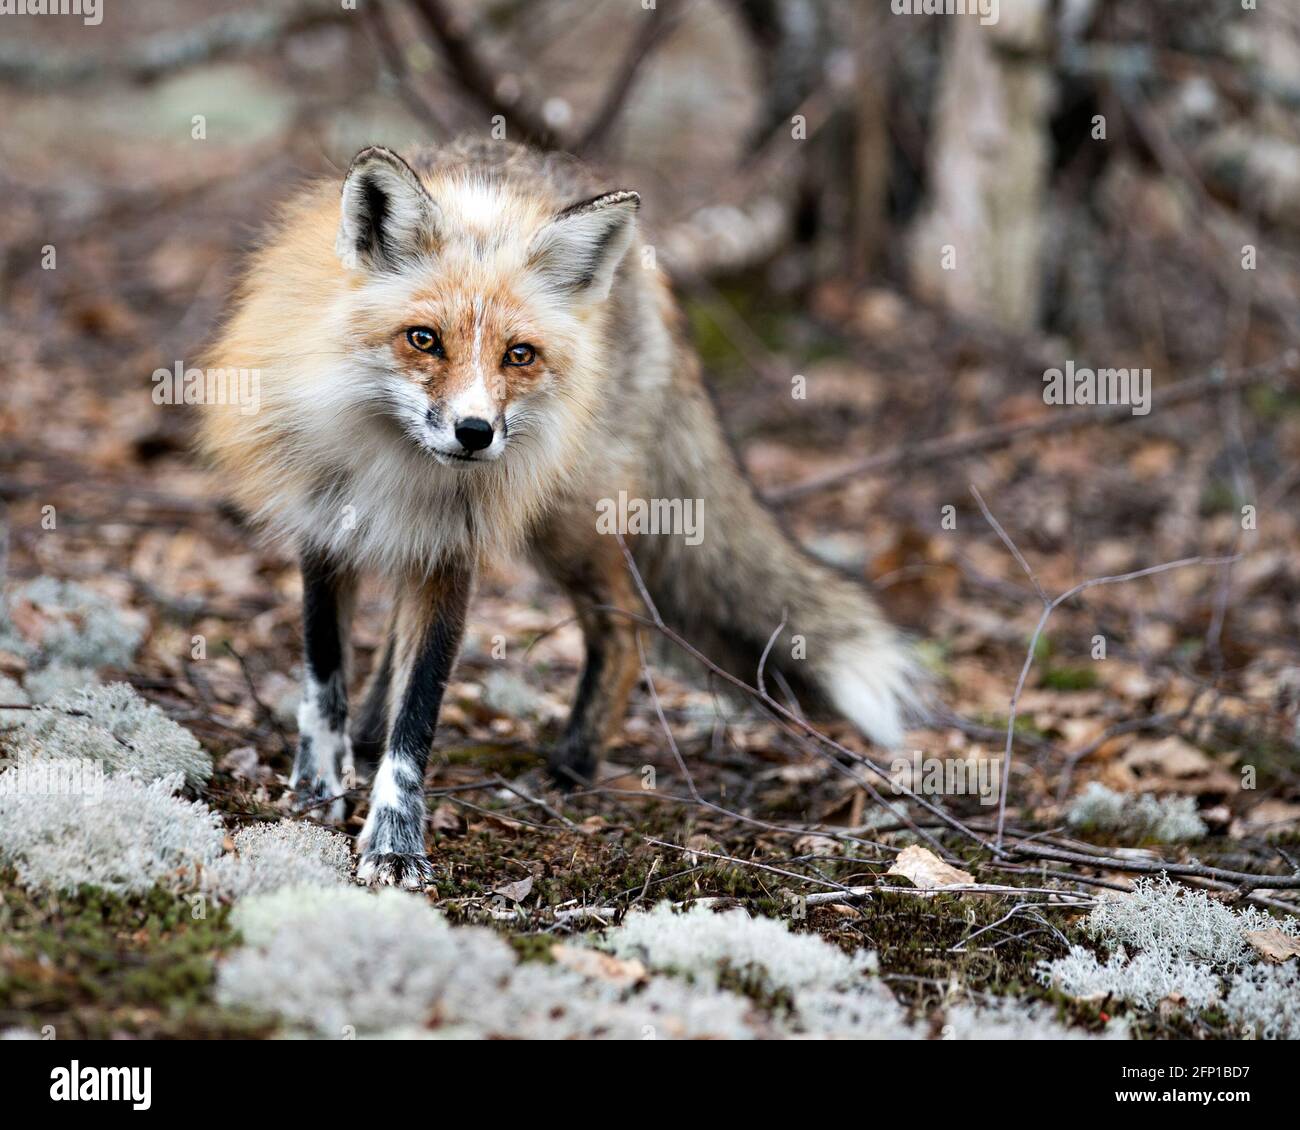 Red Fox primo piano in piedi su muschio con sfondo sfocato, godendo il suo ambiente e habitat e guardando la fotocamera. Immagine FOX. Immagine. Verticale. Foto Stock